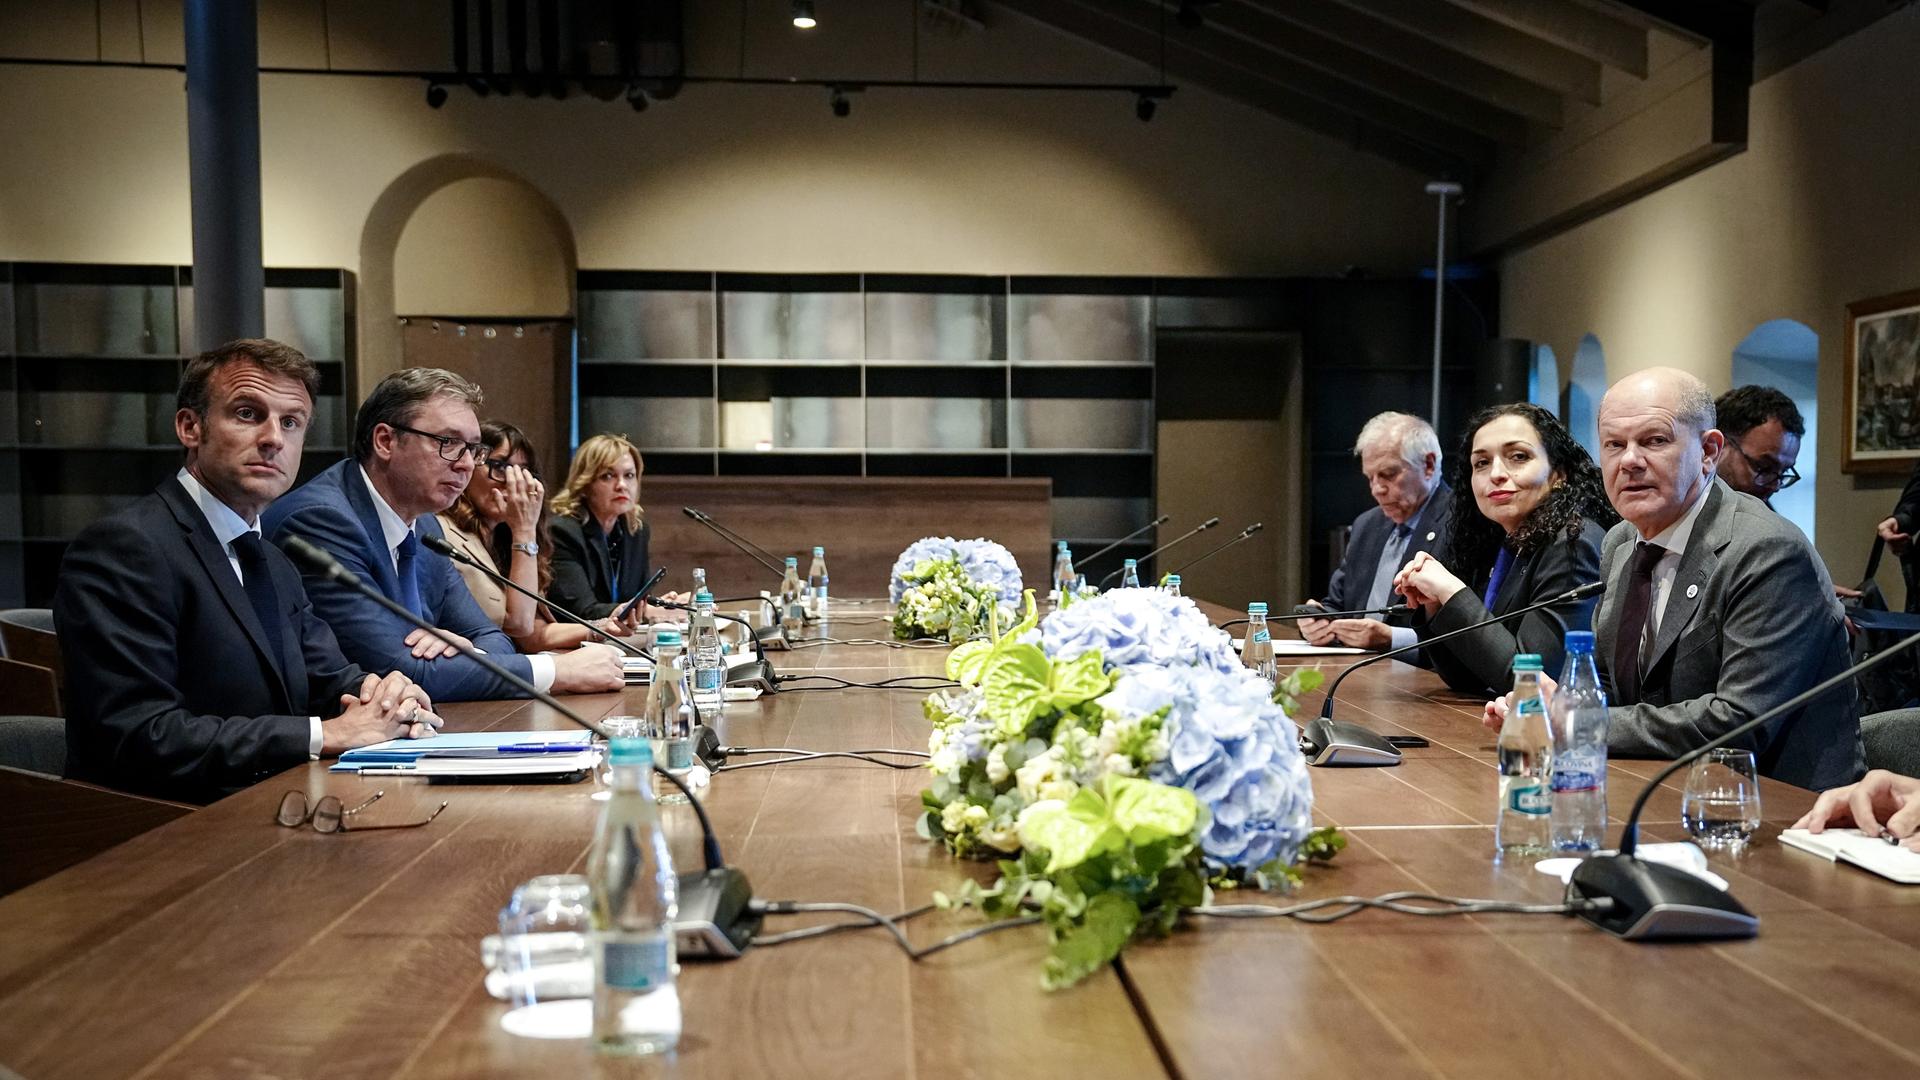 Das Foto zeigt vier Politiker an einem TIsch. Es handelt sich um Frankreichs Präsident Emmanuel Macron (l-r), Aleksandar Vucic, Präsident der Republik Serbien, Vjosa Osmani-Sadriu, Präsidentin der Republik Kosovo, und Bundeskanzler Olaf Scholz.